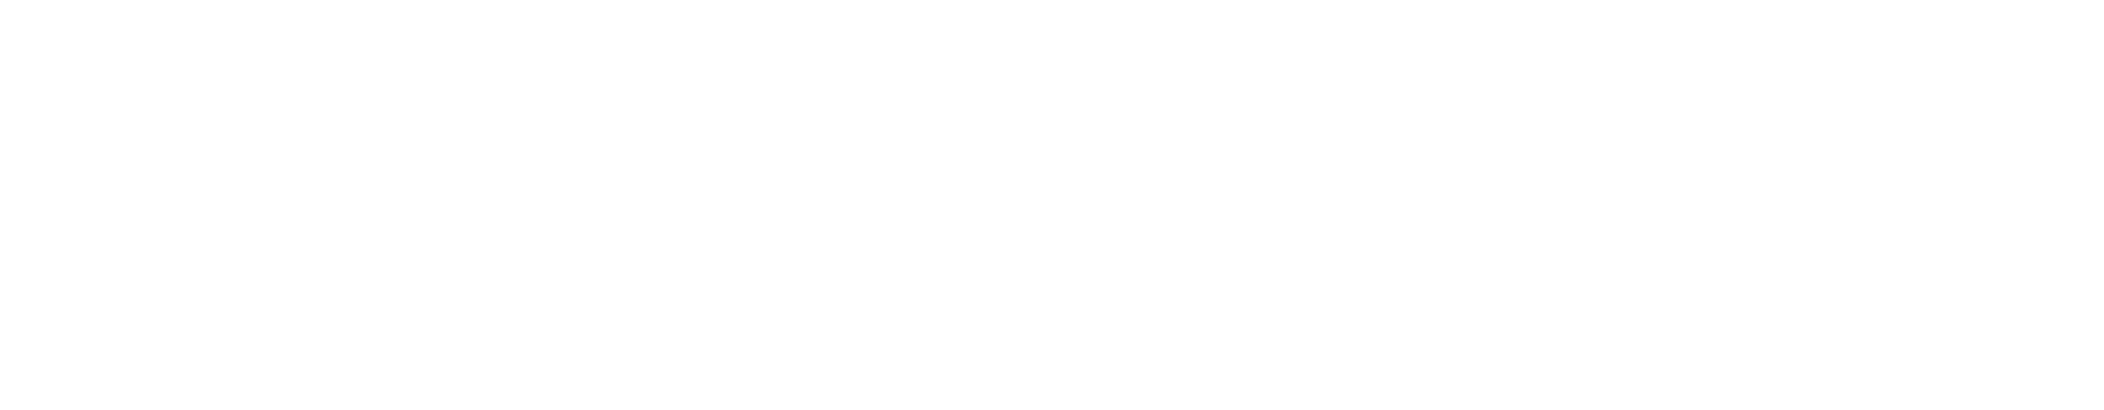 RAS Crockett logo